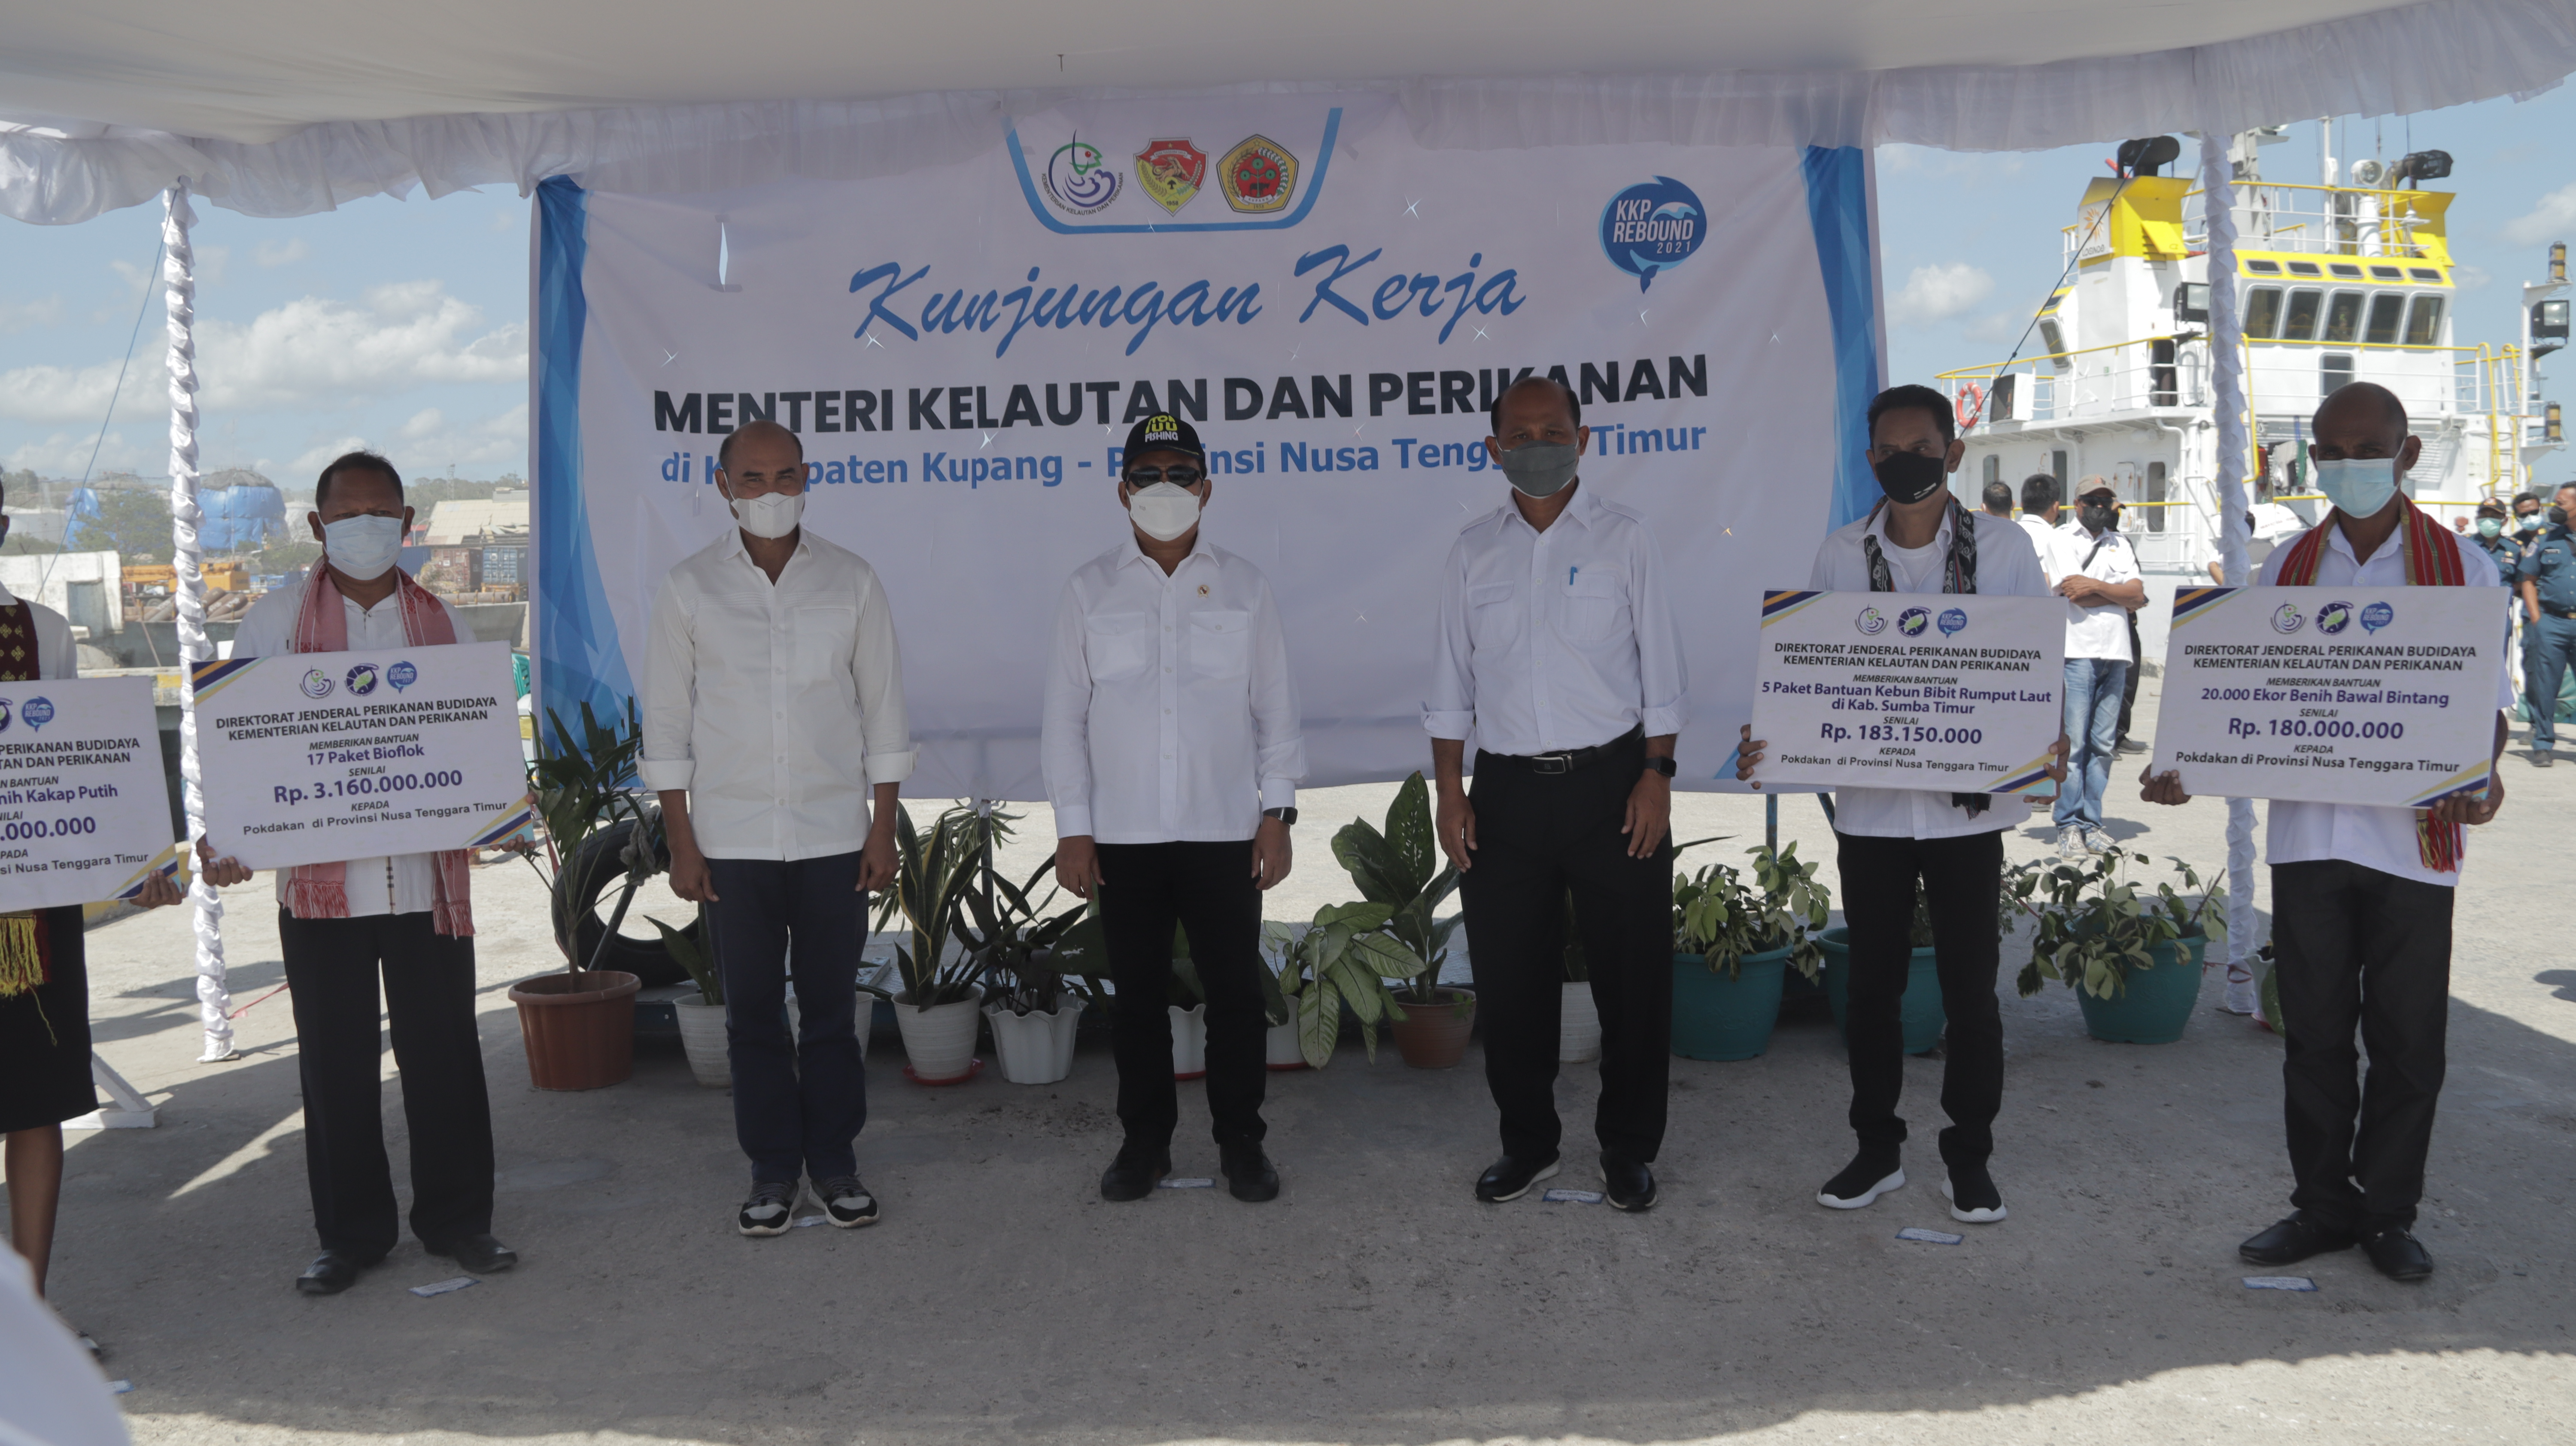 Kunjungan Kerja Menteri Kelautan dan Perikanan ke Toraja, Sulawesi Selatan